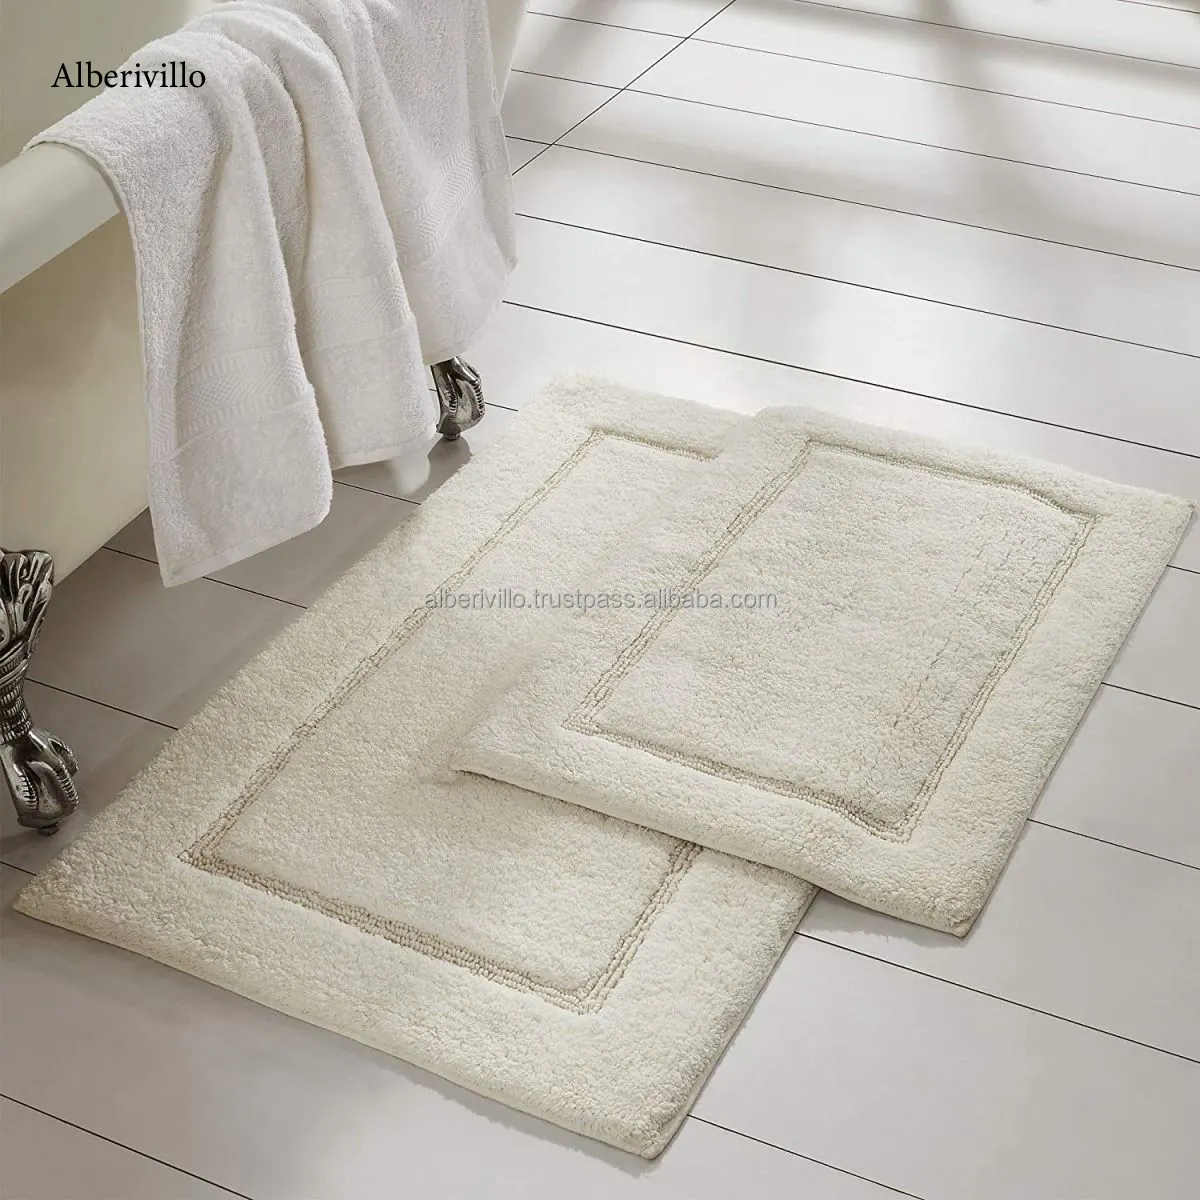 Großhandel Elfenbein Baumwolle Teppich Set für Tür Schlafzimmer Hand gefertigte Badezimmer matte Rutsch feste Super Absorbent Bade matte